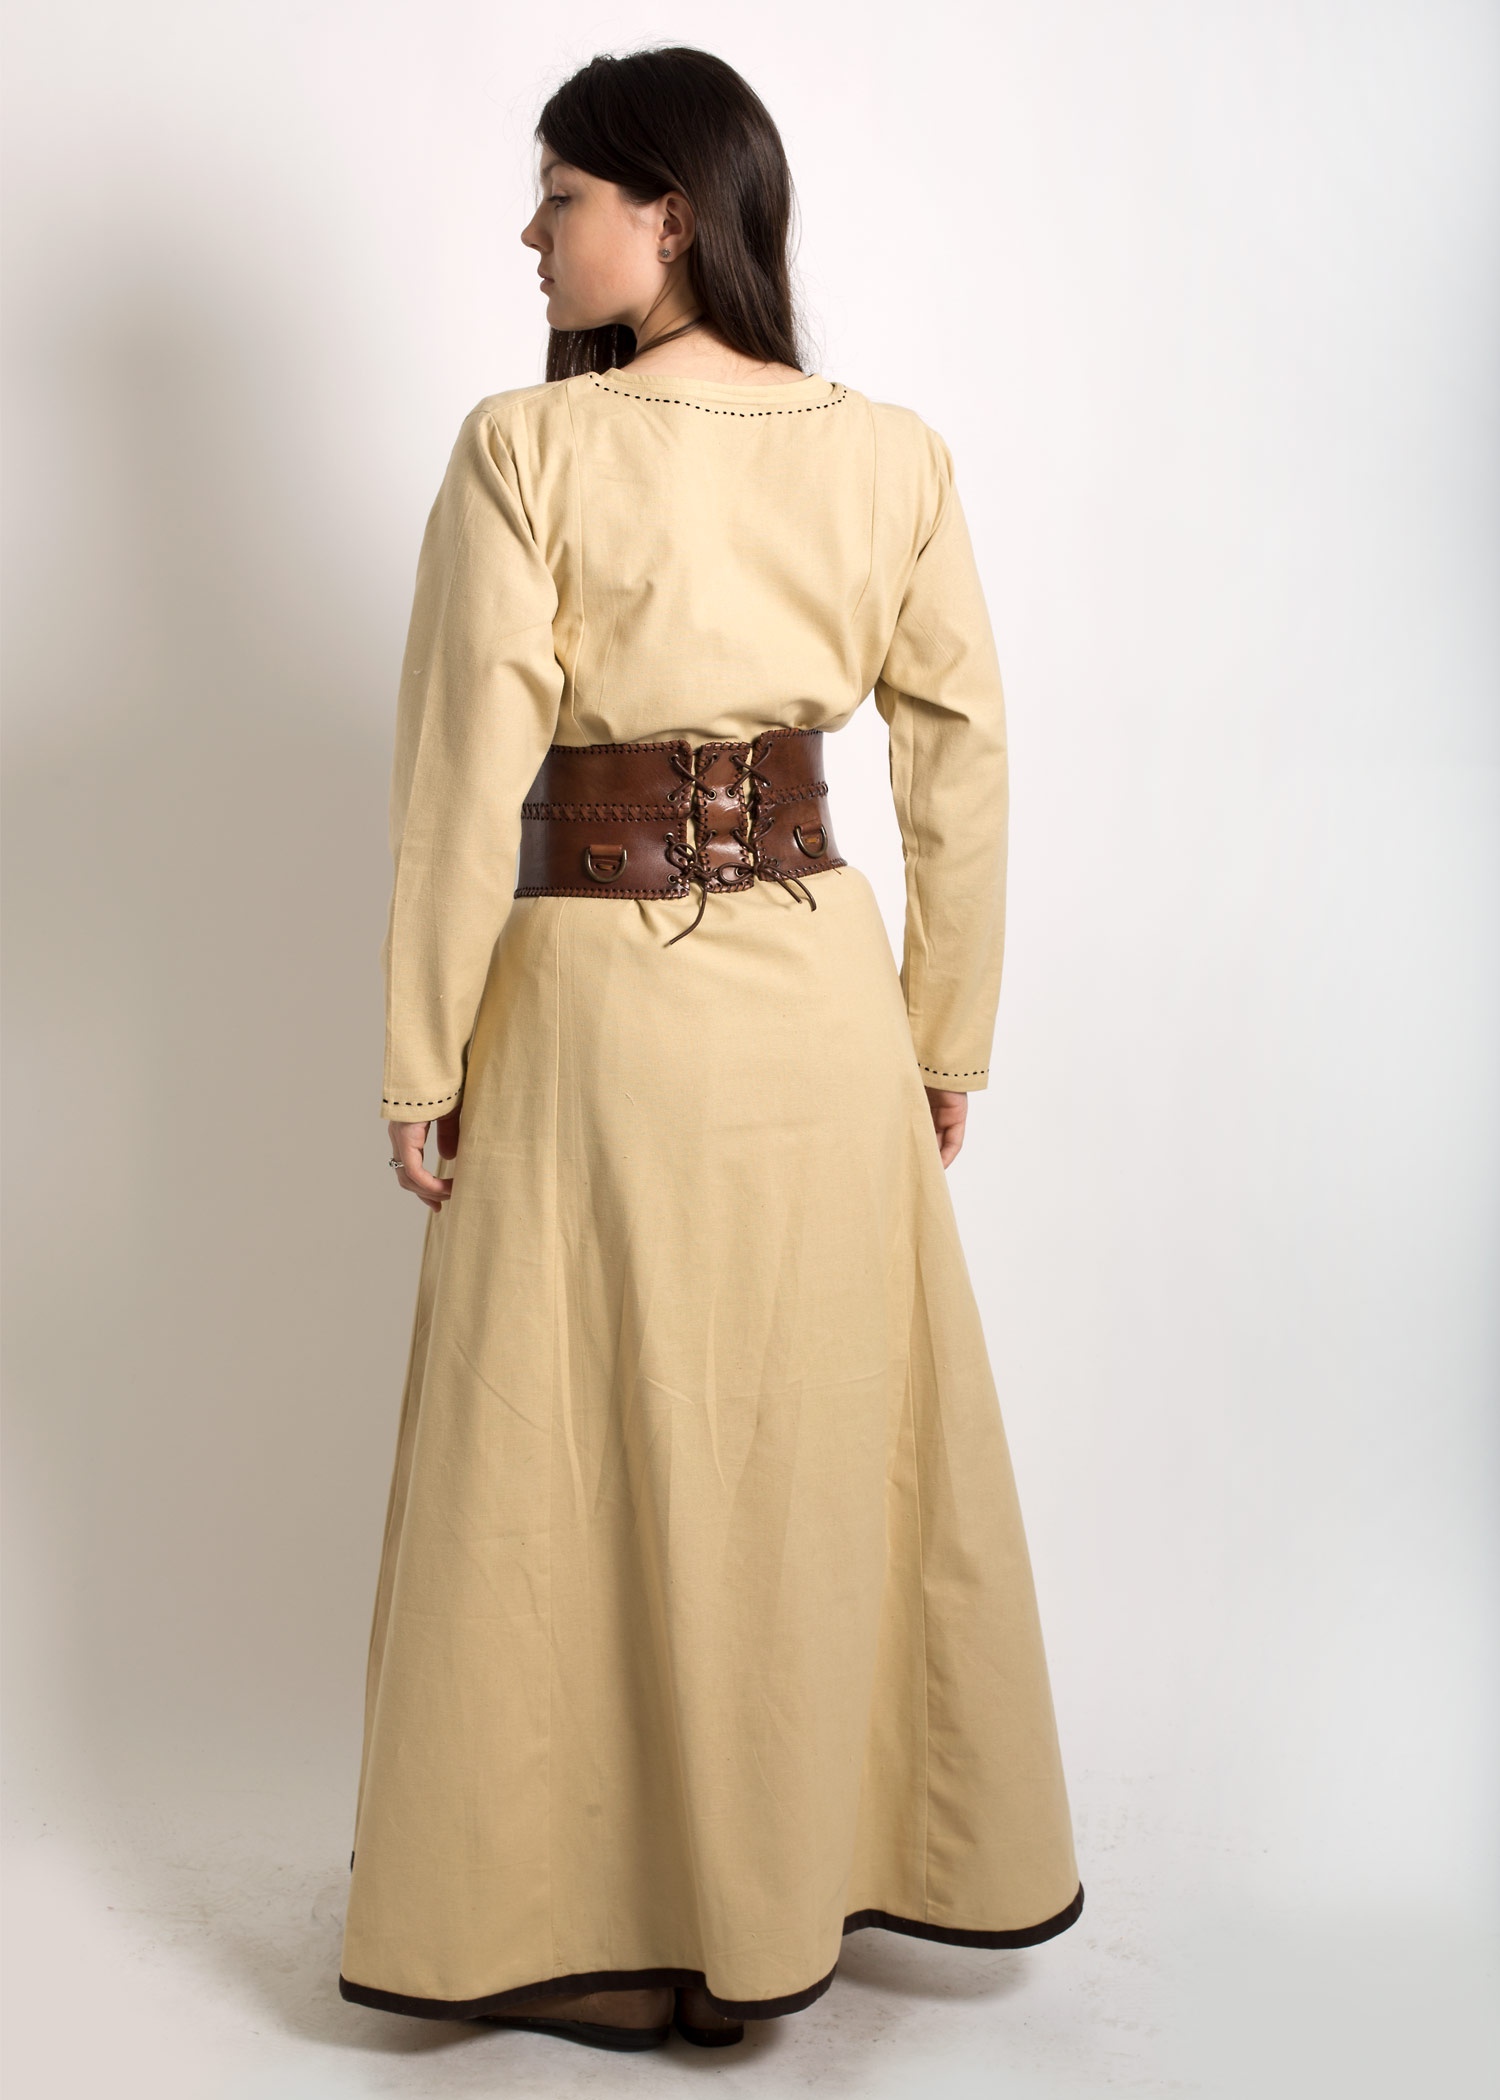 EpicArmoury Bauernkleid Weiß Beige Kleid Damen Mittelalterkleid LARP S-XL